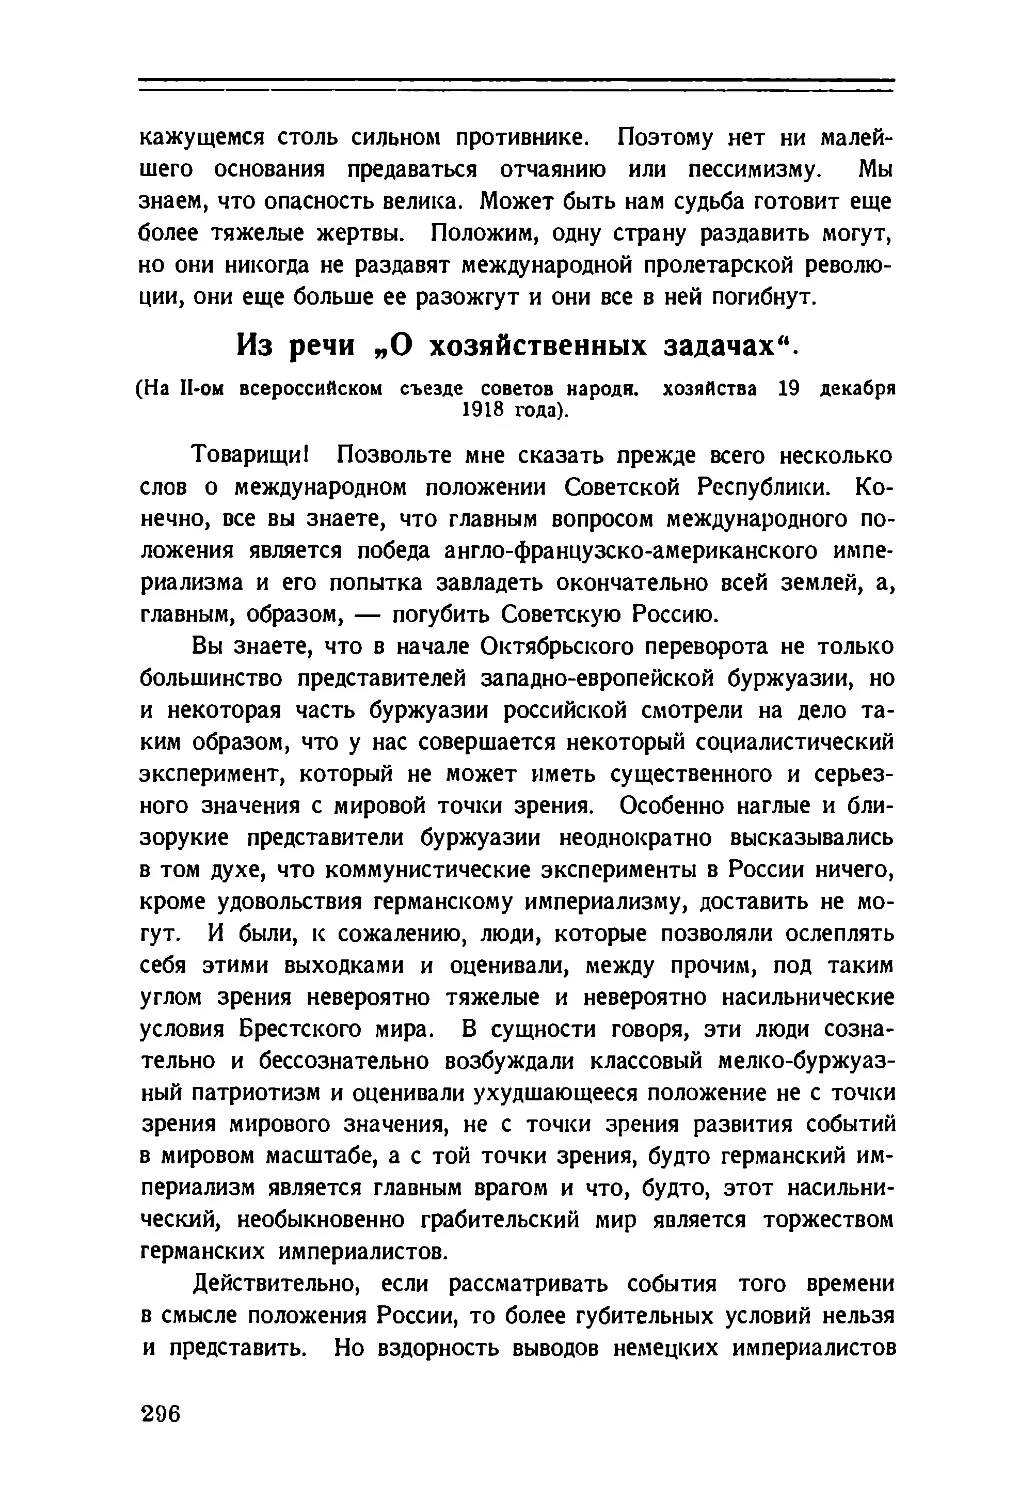 Из речи „О хозяйственных задачах“ на II всероссийском съезде советов народн. хозяйства 19 декабря 1918 г.